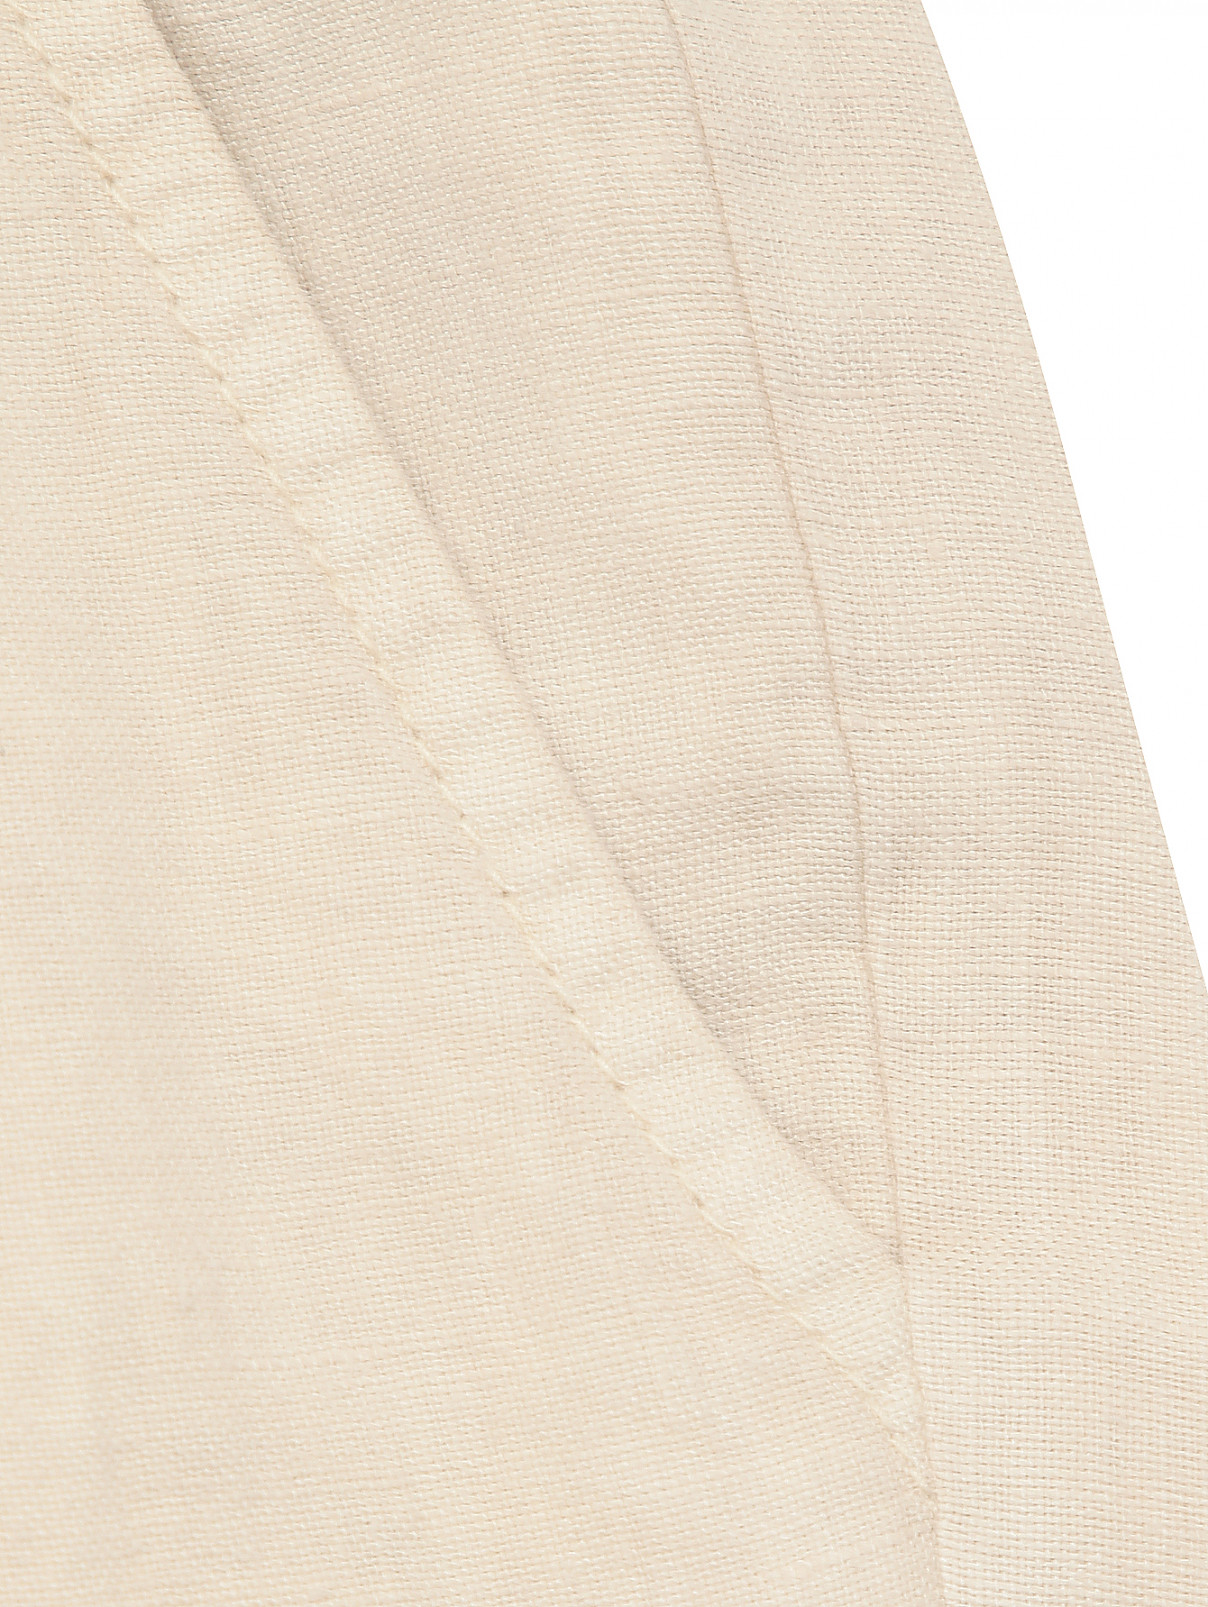 Брюки изо льна с карманами Daniele Alessandrini  –  Деталь  – Цвет:  Бежевый